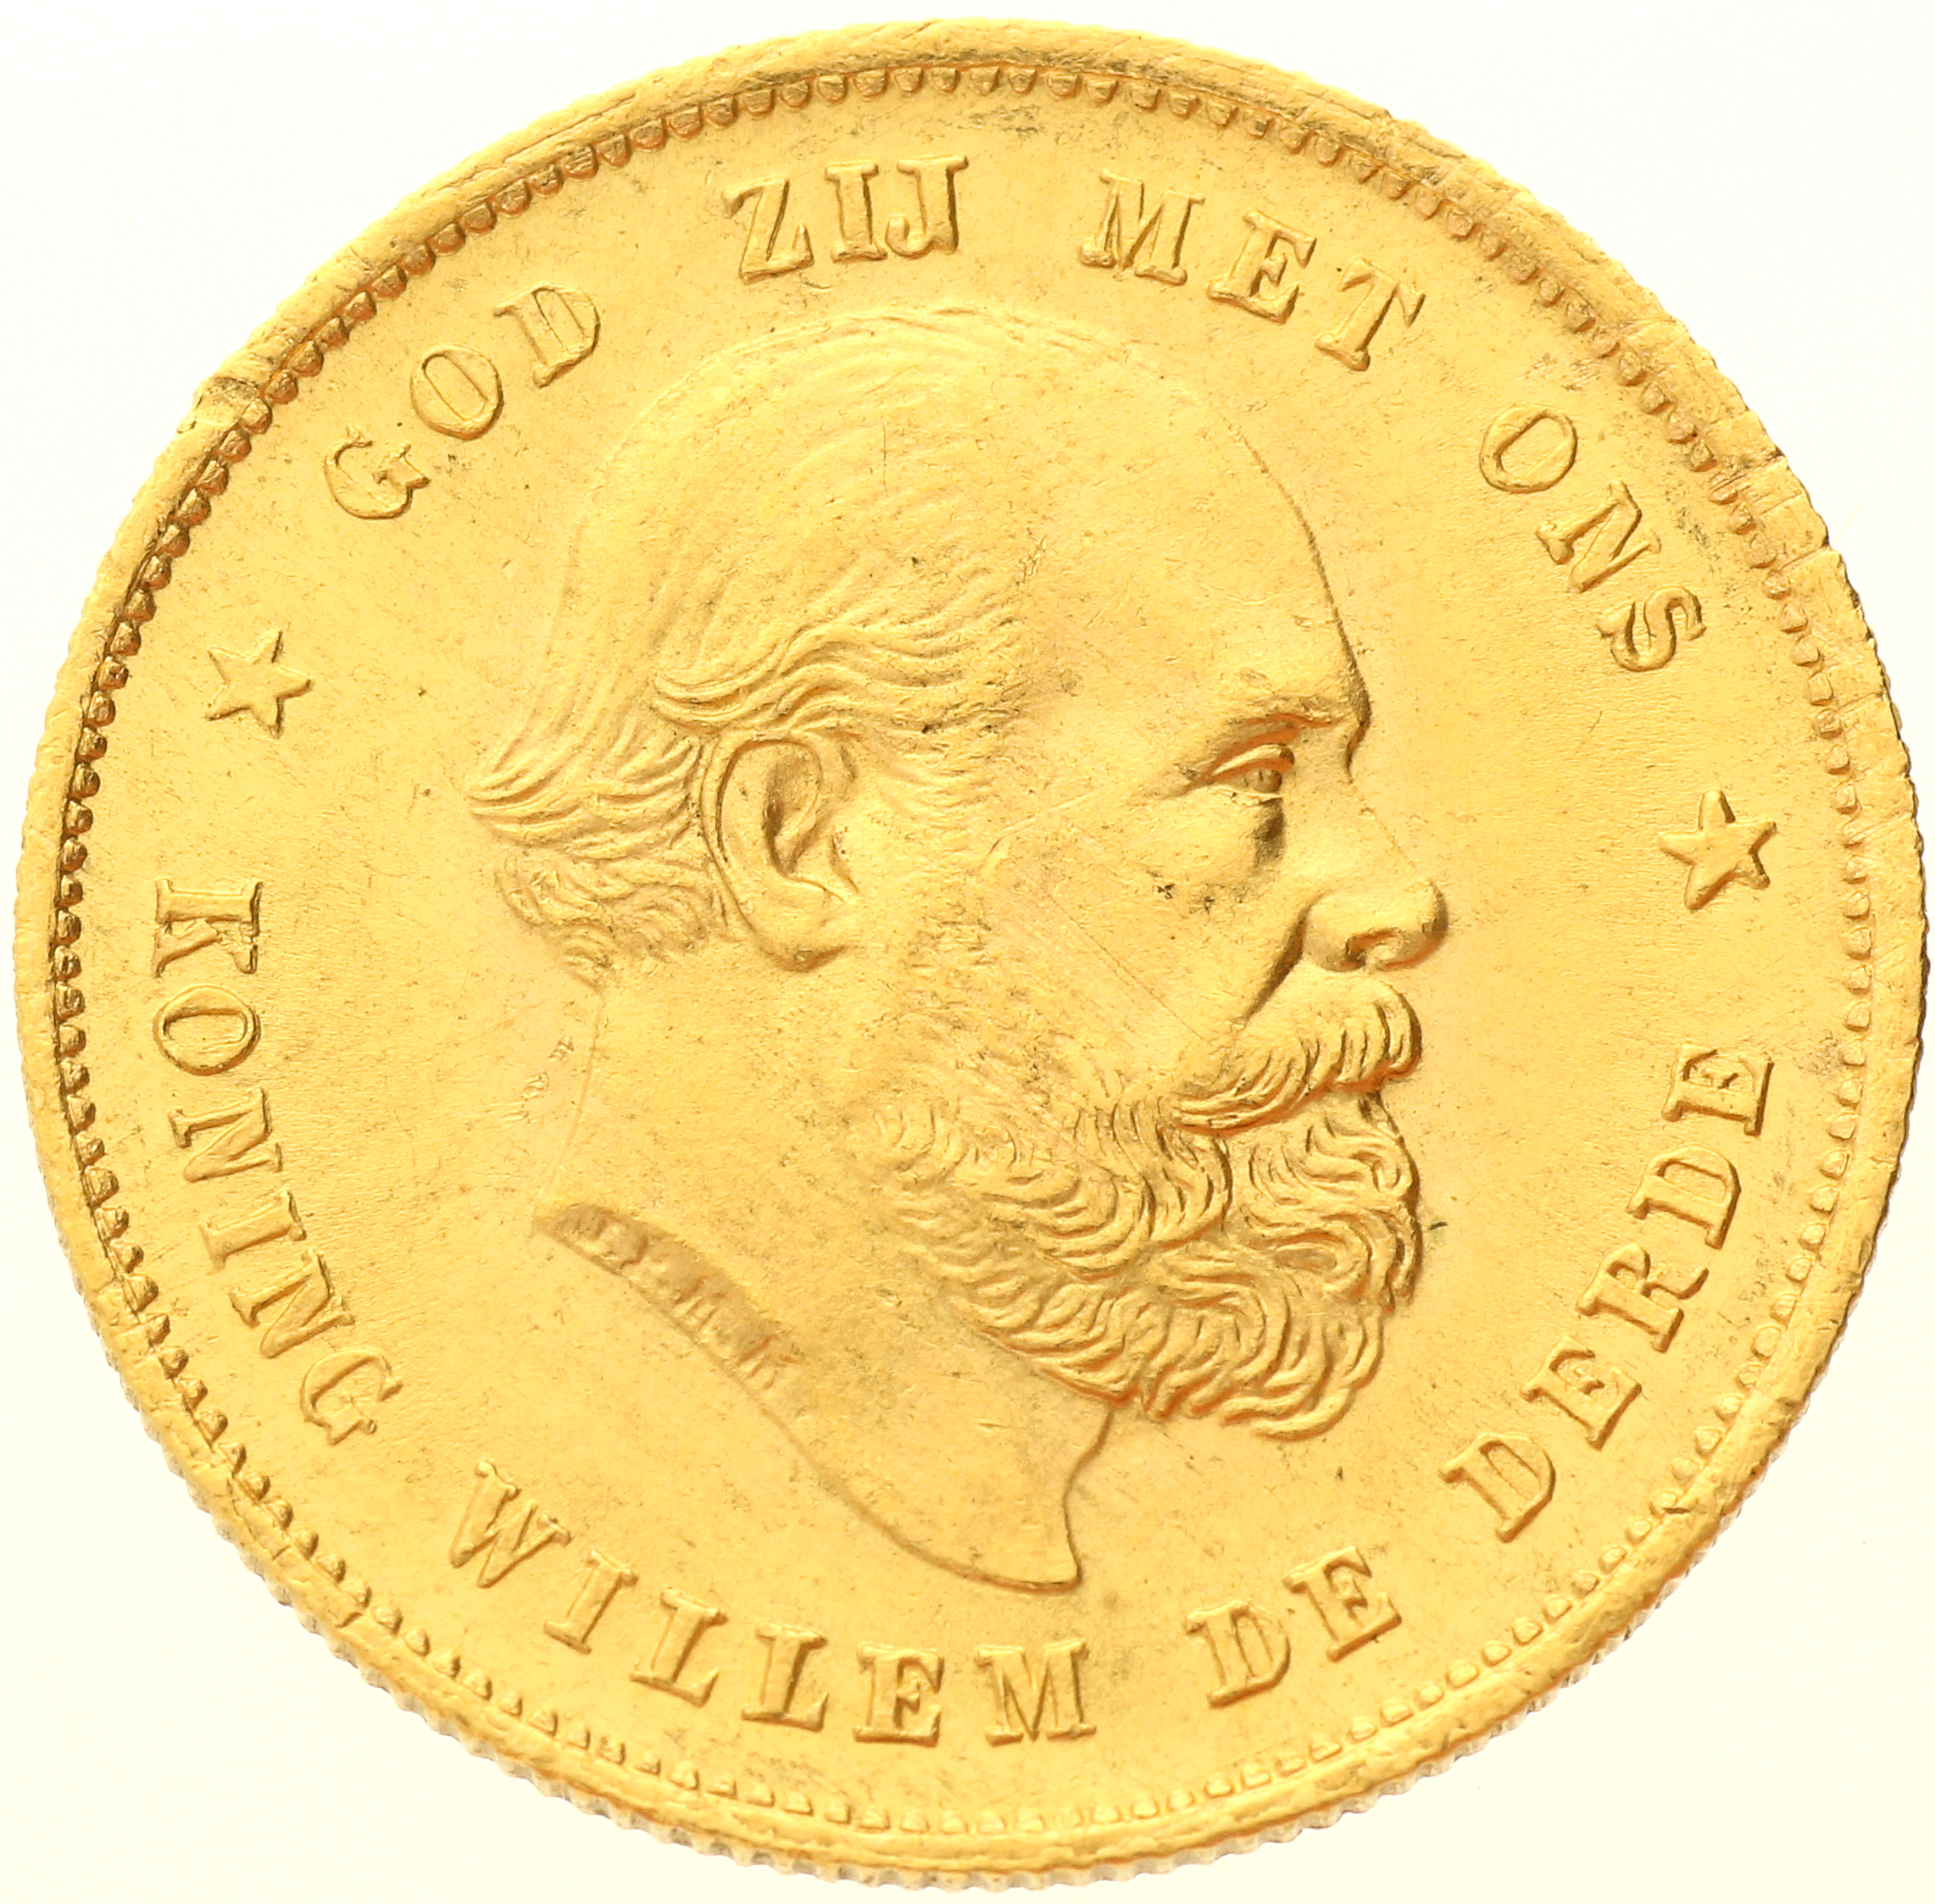 Netherlands - 10 gulden - 1876